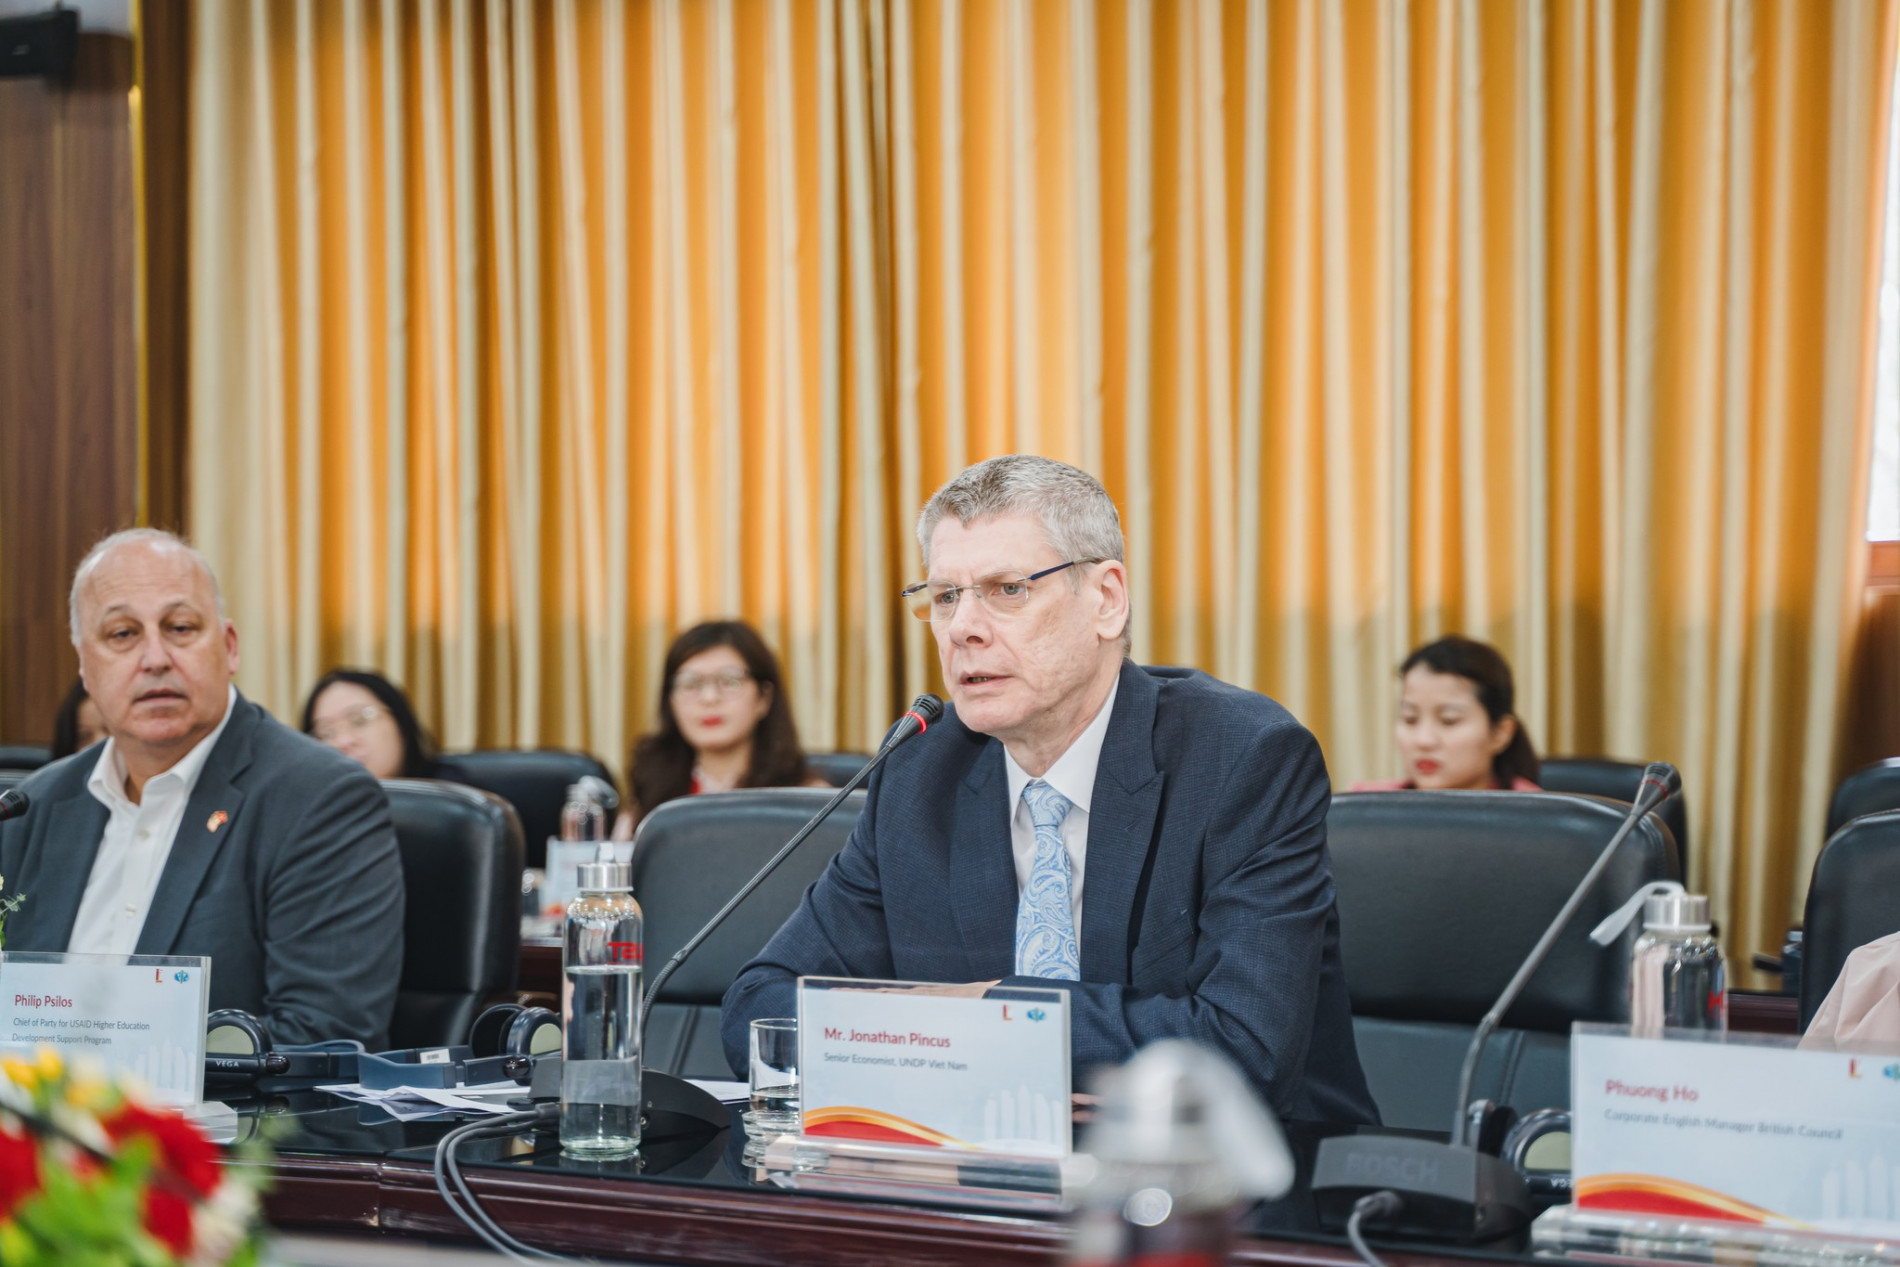 GS. Jonathan Pincus, Trưởng Chuyên gia kinh tế, UNDP Viet Nam chia sẻ về chủ đề "Đào tạo nguồn nhân lực trình độ cao - Kinh nghiệm cho Việt Nam và các nước đang phát triển"